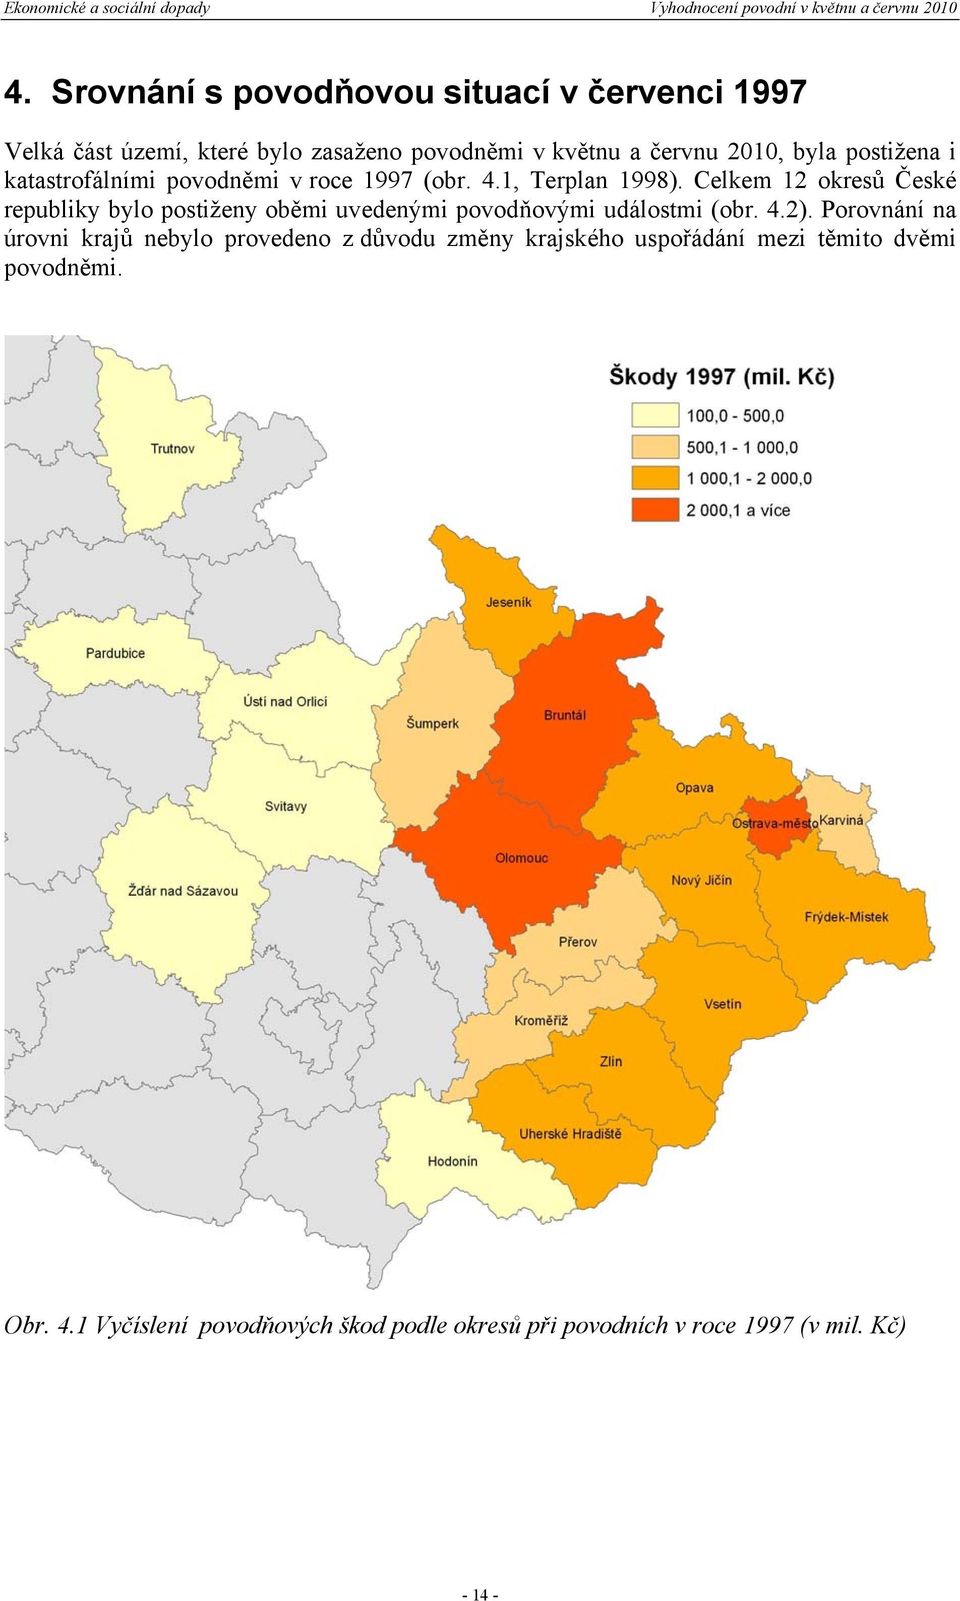 Celkem 12 okresů České republiky bylo postiženy oběmi uvedenými povodňovými událostmi (obr. 4.2).